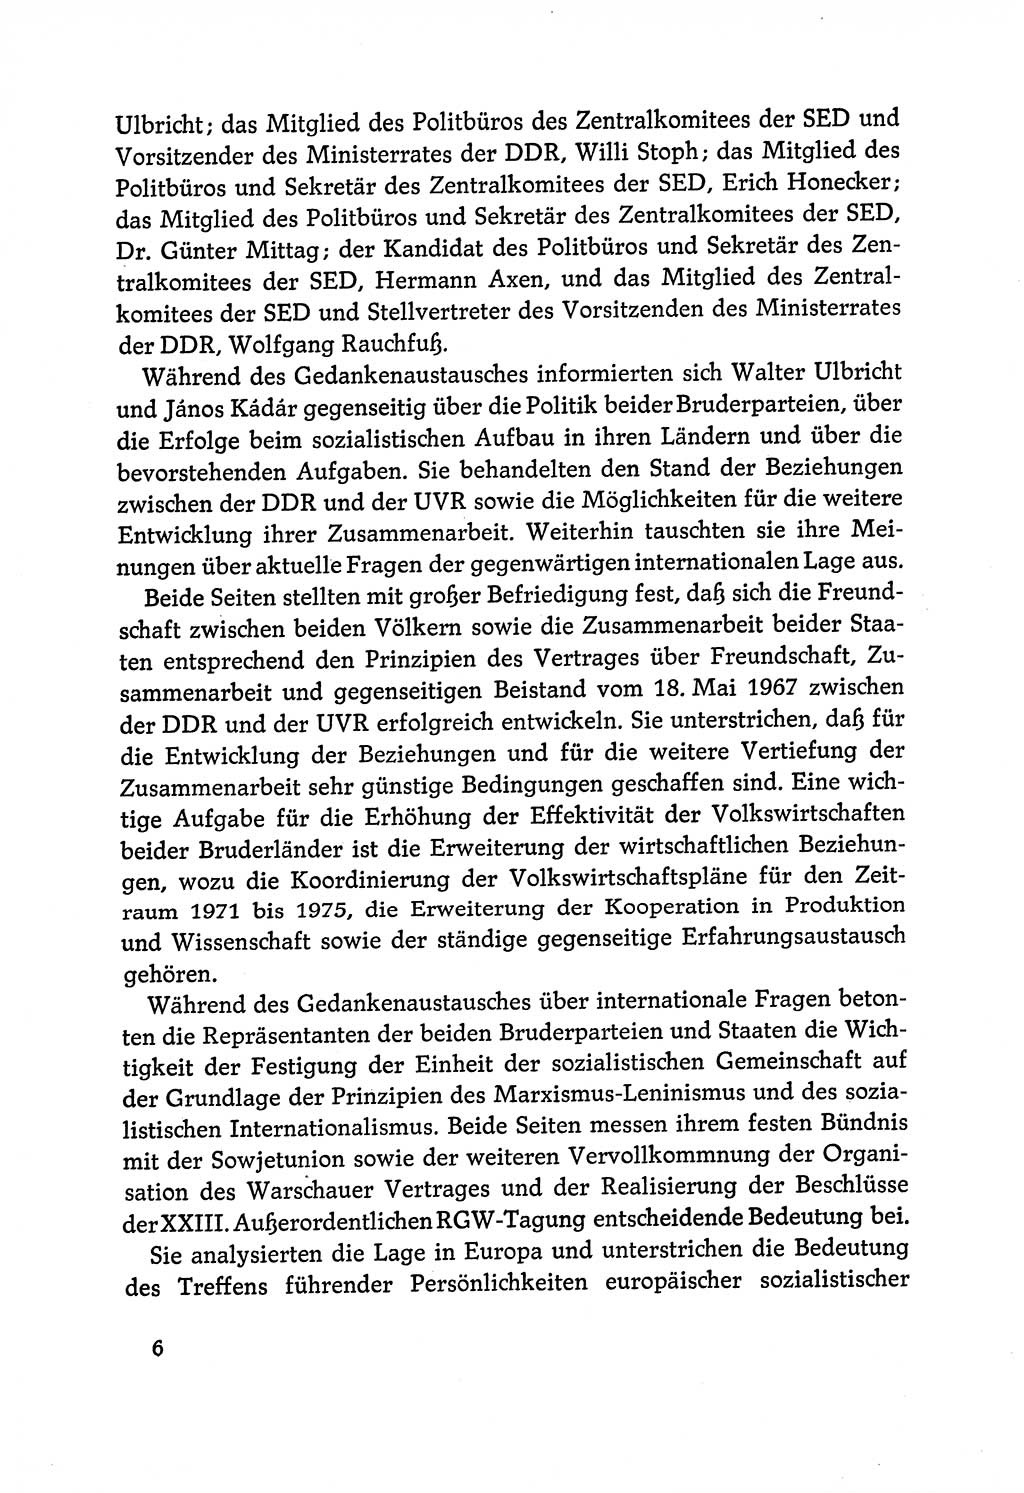 Dokumente der Sozialistischen Einheitspartei Deutschlands (SED) [Deutsche Demokratische Republik (DDR)] 1970-1971, Seite 6 (Dok. SED DDR 1970-1971, S. 6)